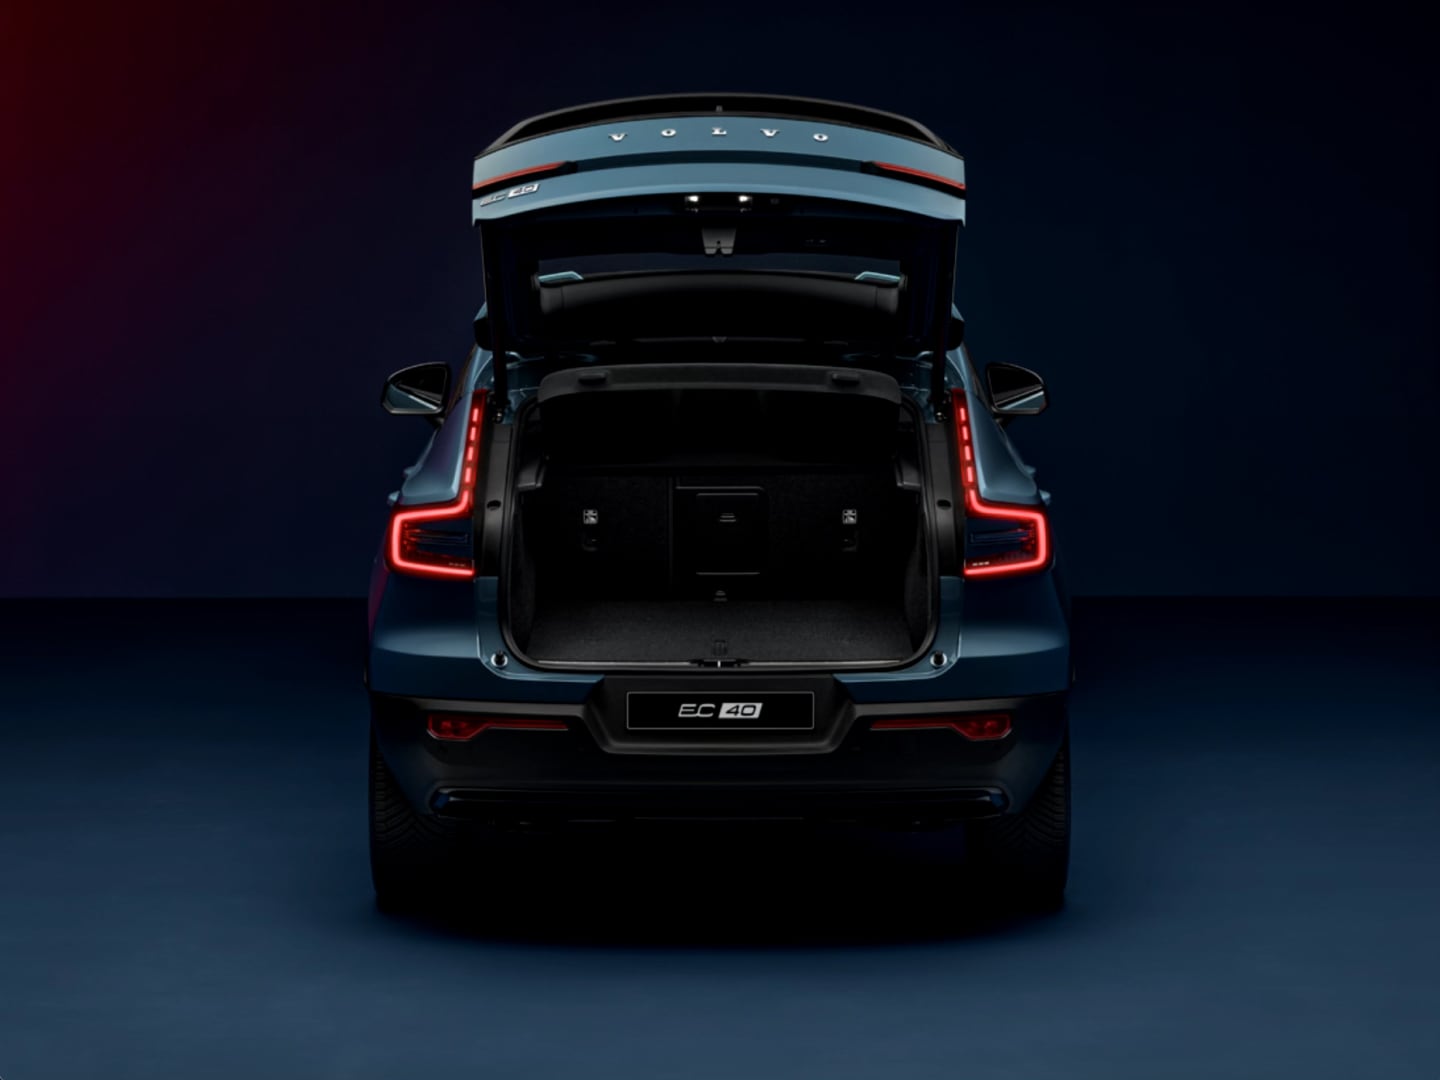 Hayonul deschis al Volvo EC40 dezvăluie un portbagaj spațios și larg în spate.